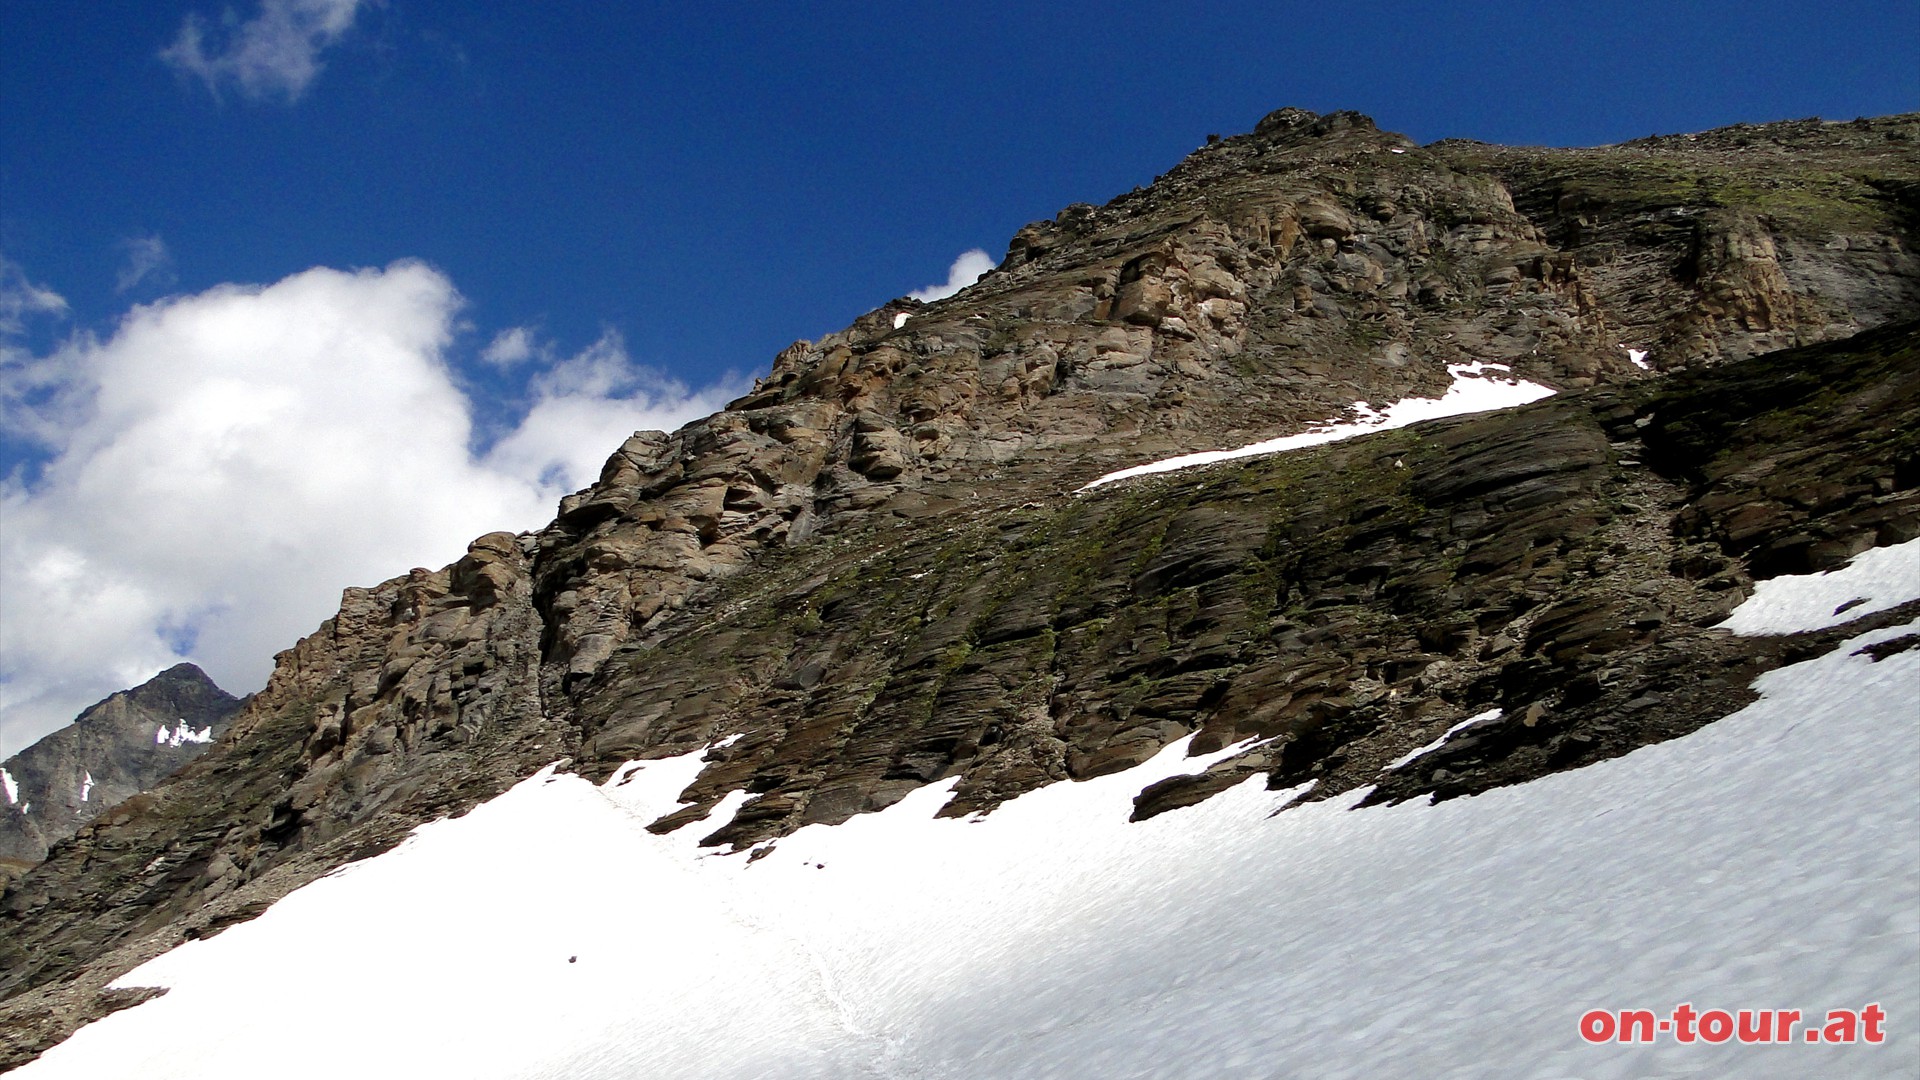 Weiterer Aufstieg zum Fochezkopf, inkl. leichter, versicherter Kletterei.